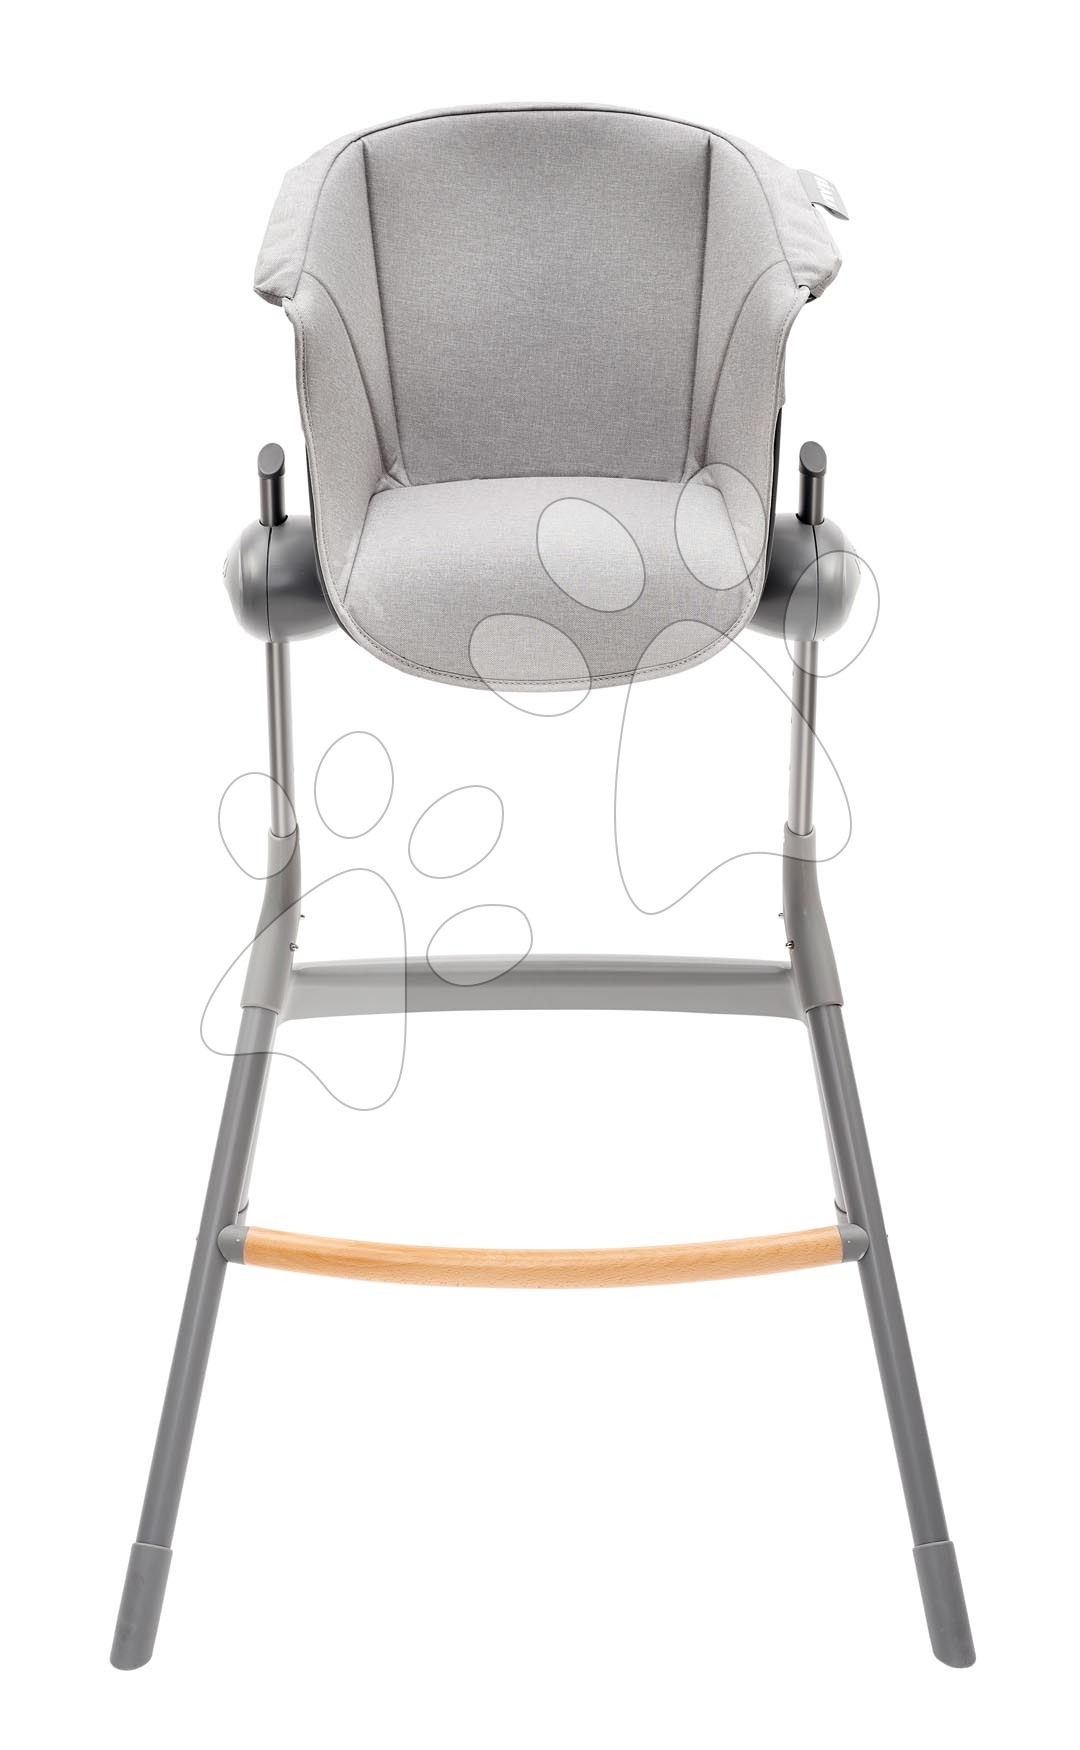 Textil betét Junior Up & Down High Chair Beaba fa etetőszékhez szürke 36 hó-tól  BE915042